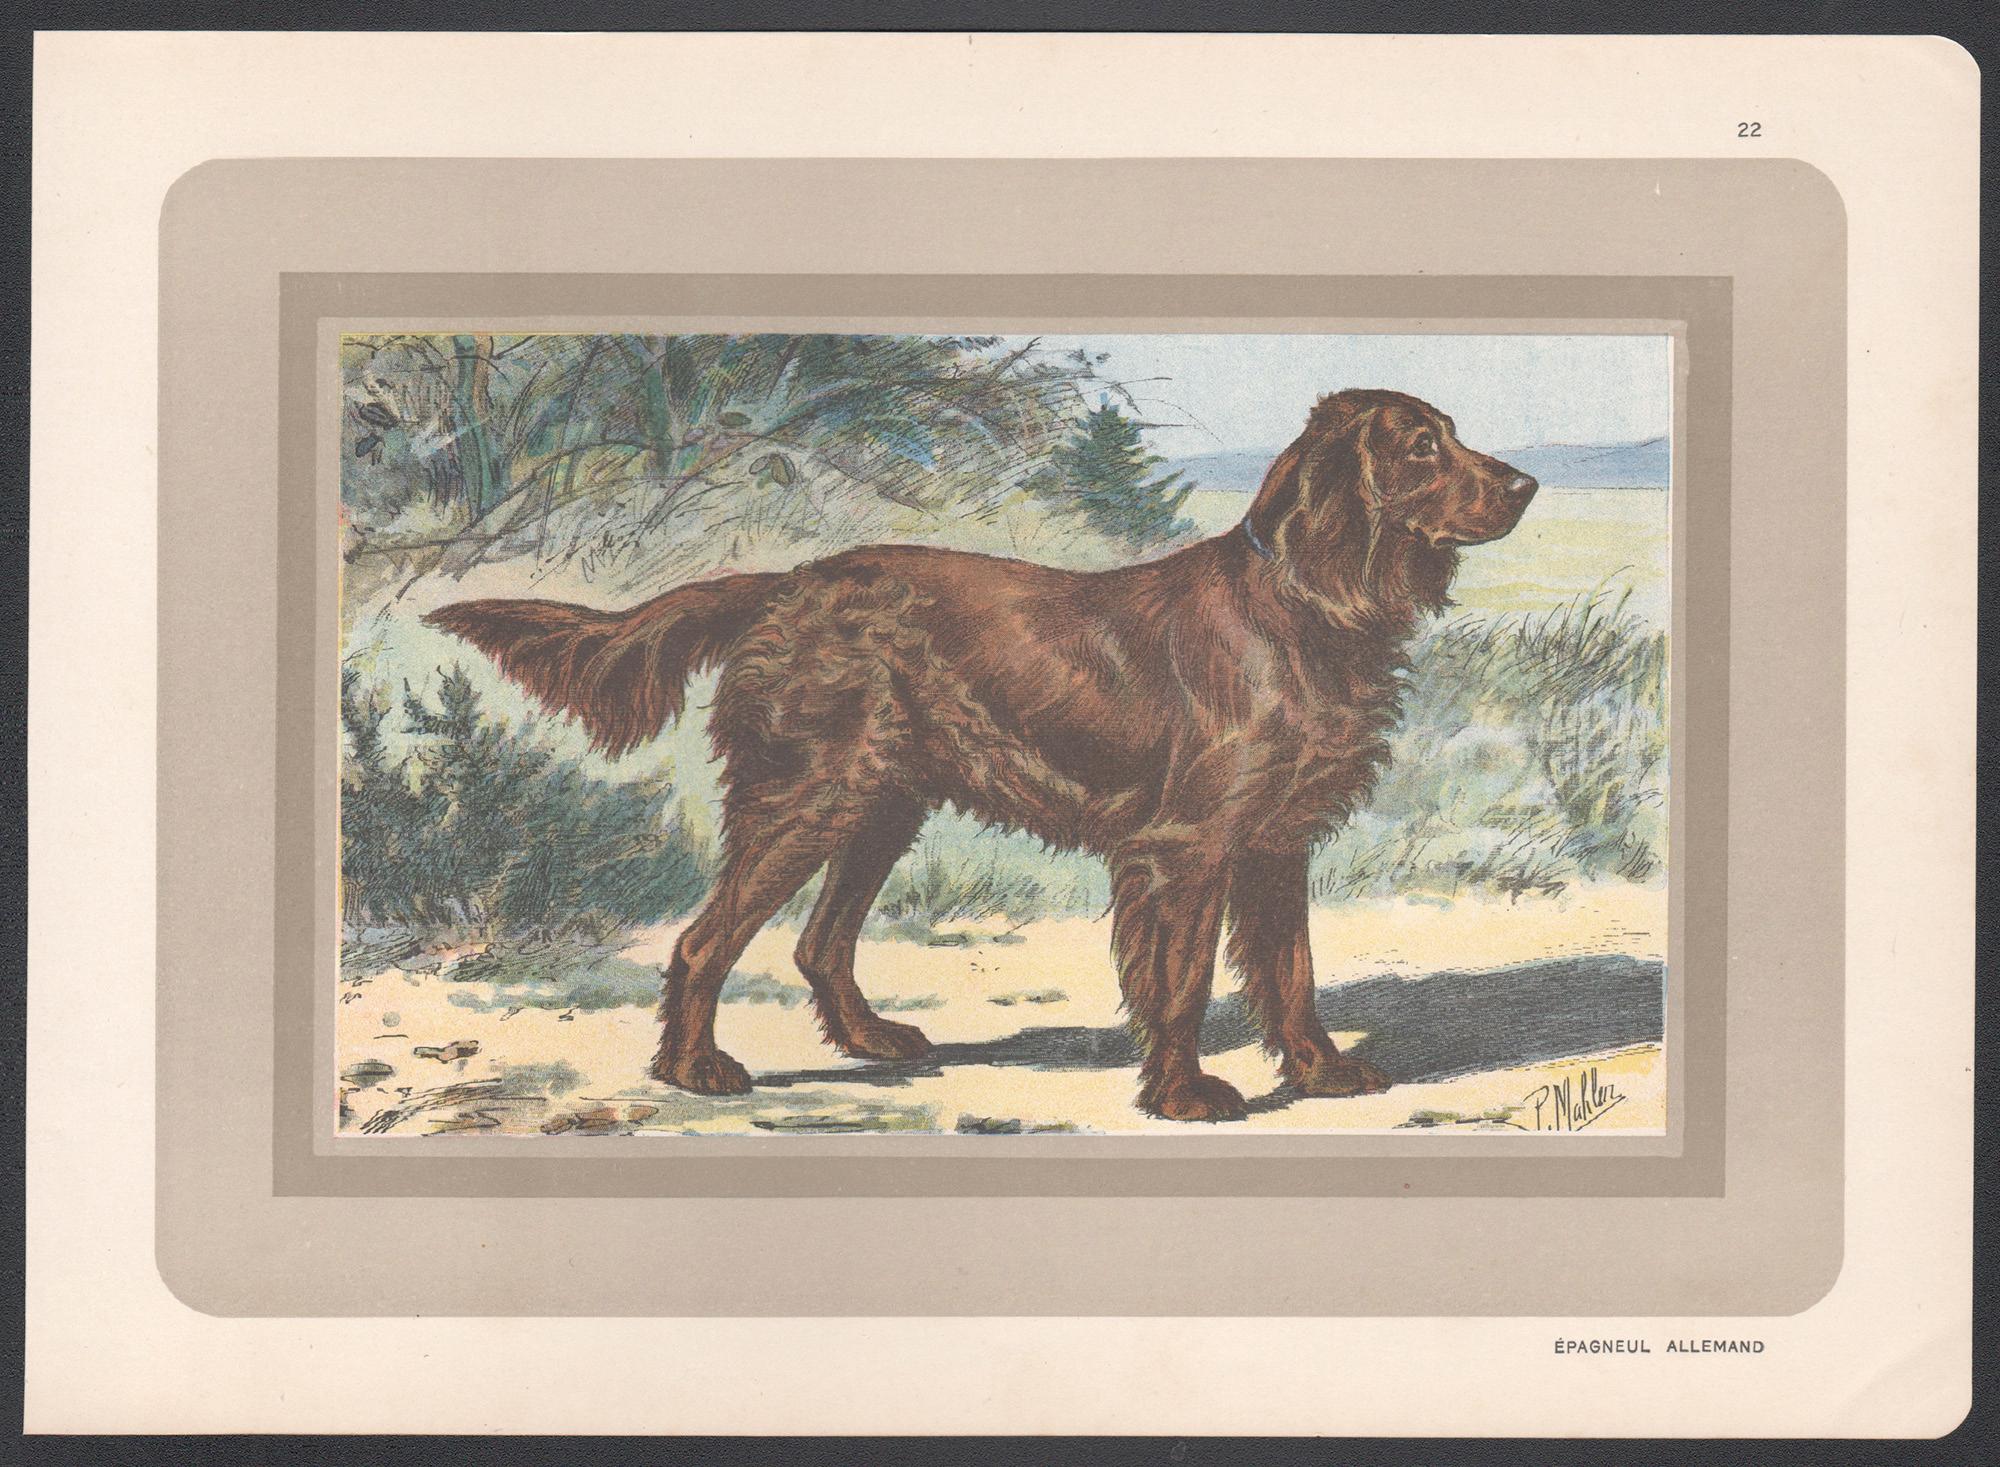 Impression chromolithographie d'un épagneul allemand, chien de chasse français, 1931 - Print de P. Mahler